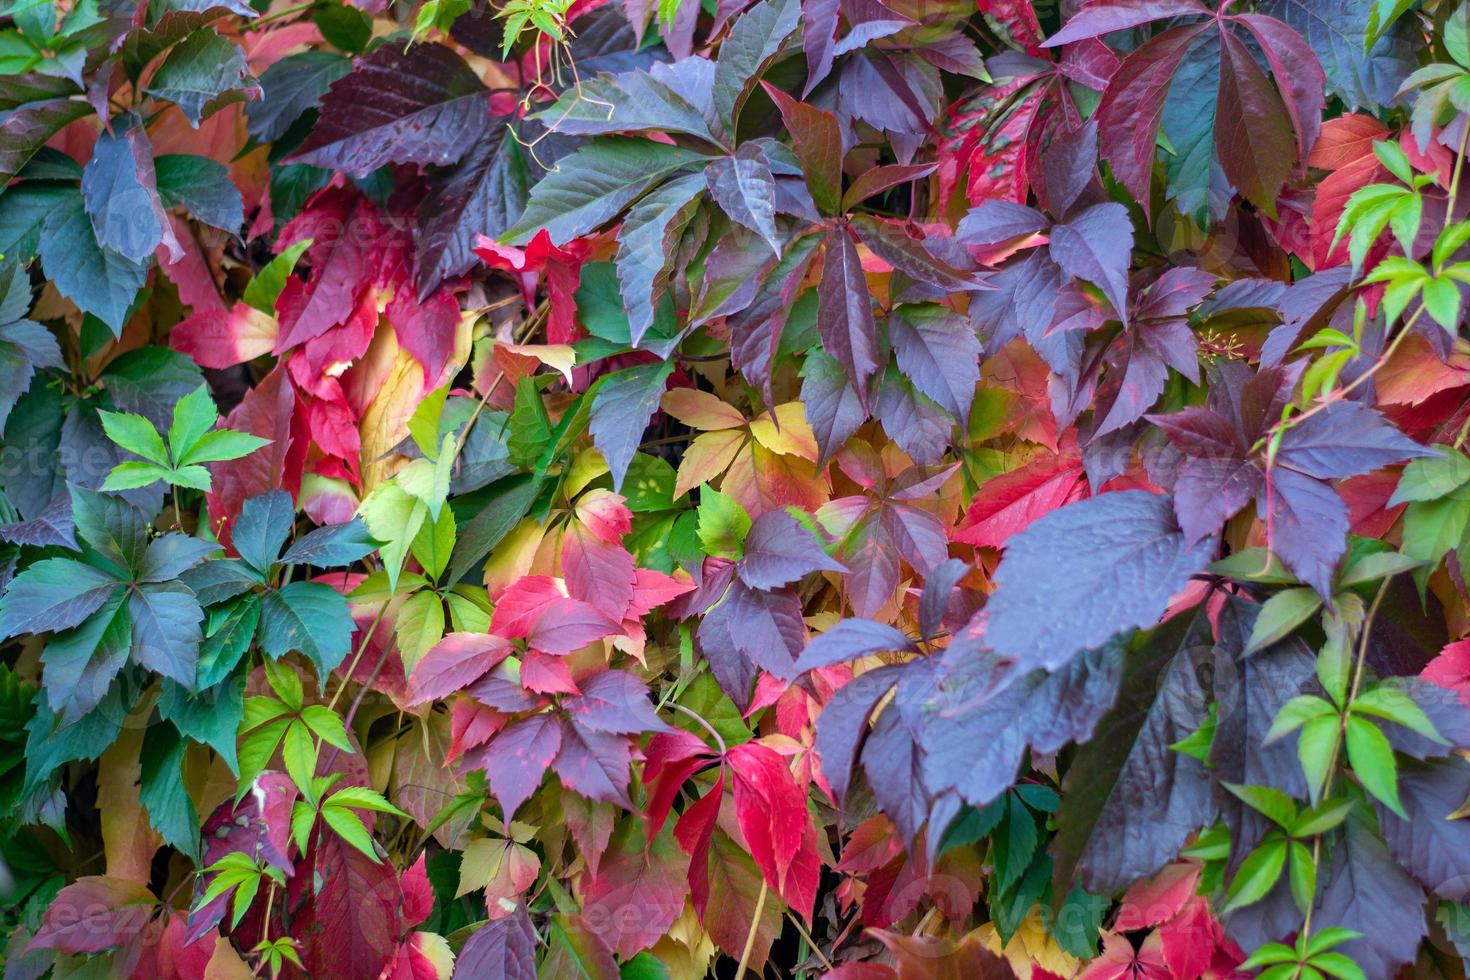 folhas coloridas de uvas selvagens no outono foto